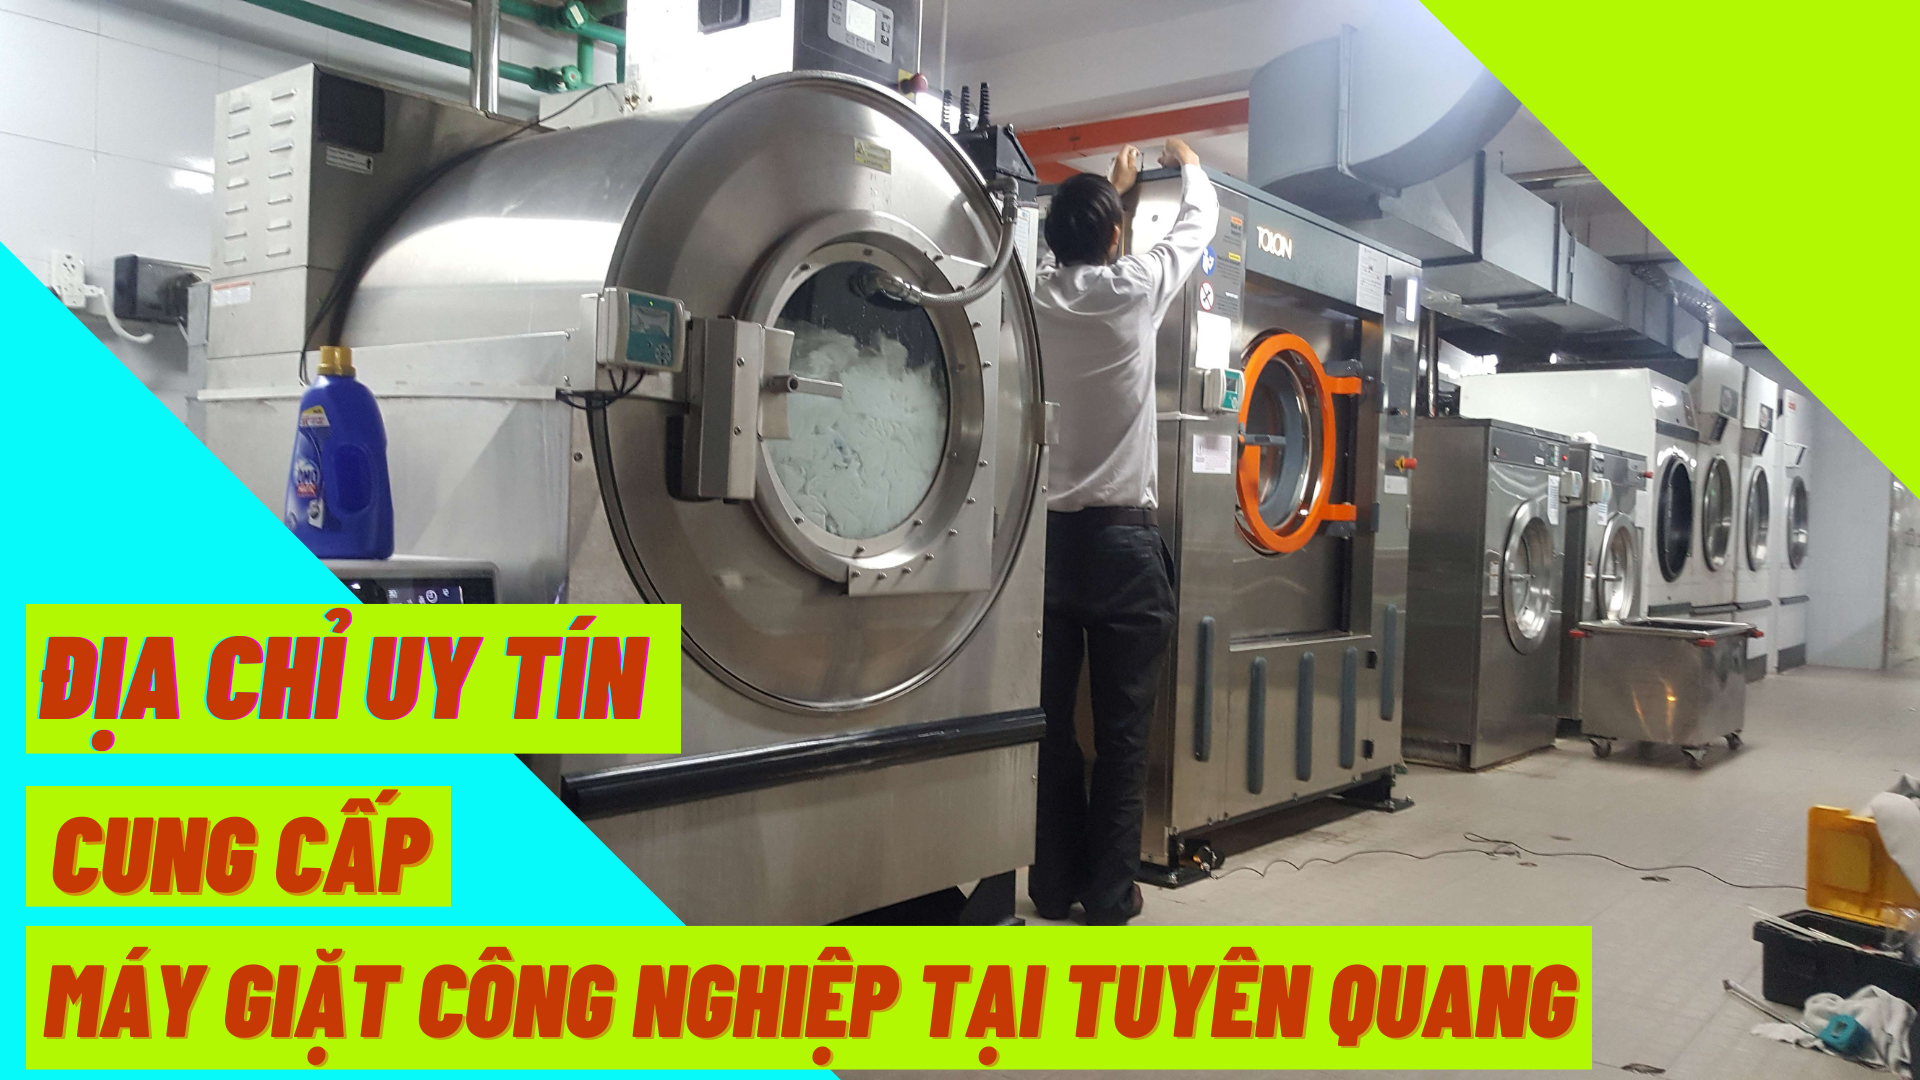 Địa chỉ uy tín cung cấp máy giặt công nghiệp tại Tuyên Quang